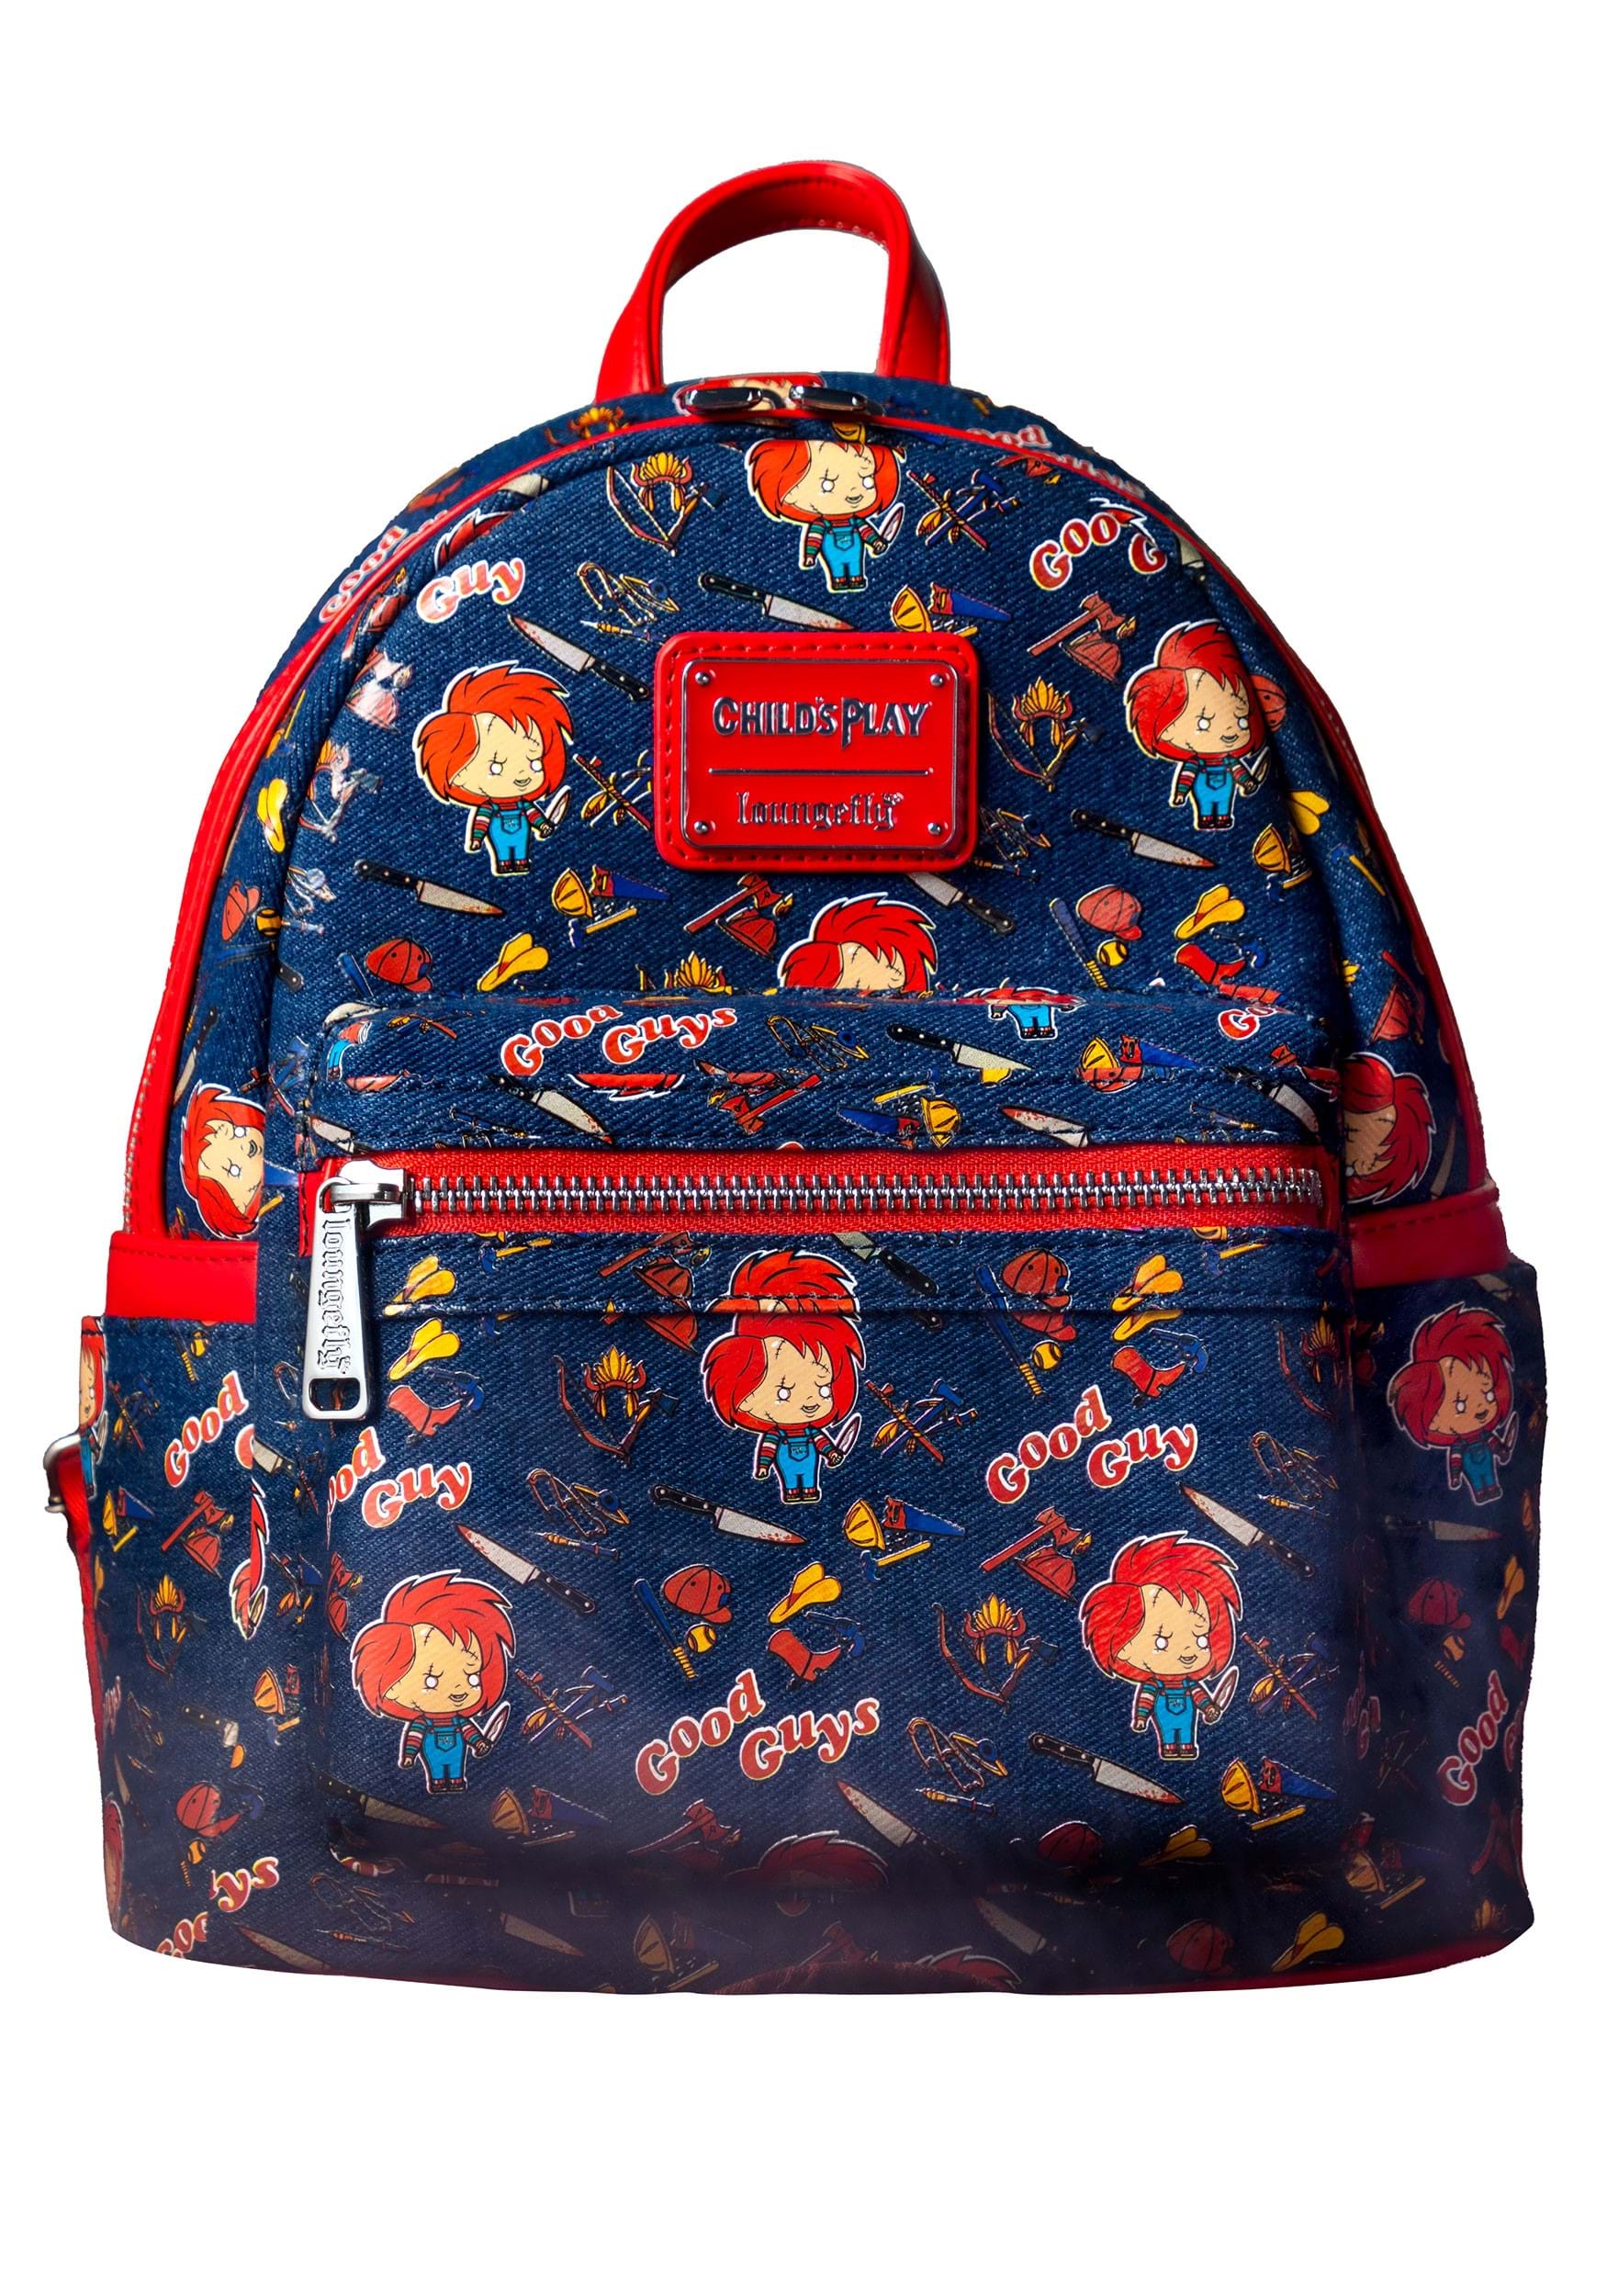 CoCopeaunts Multifunction High Quality Denim Backpack Korean Style Blue  School Bag Student Shoulder Bag Teenage Girls Men Laptop Backpacks -  Walmart.com